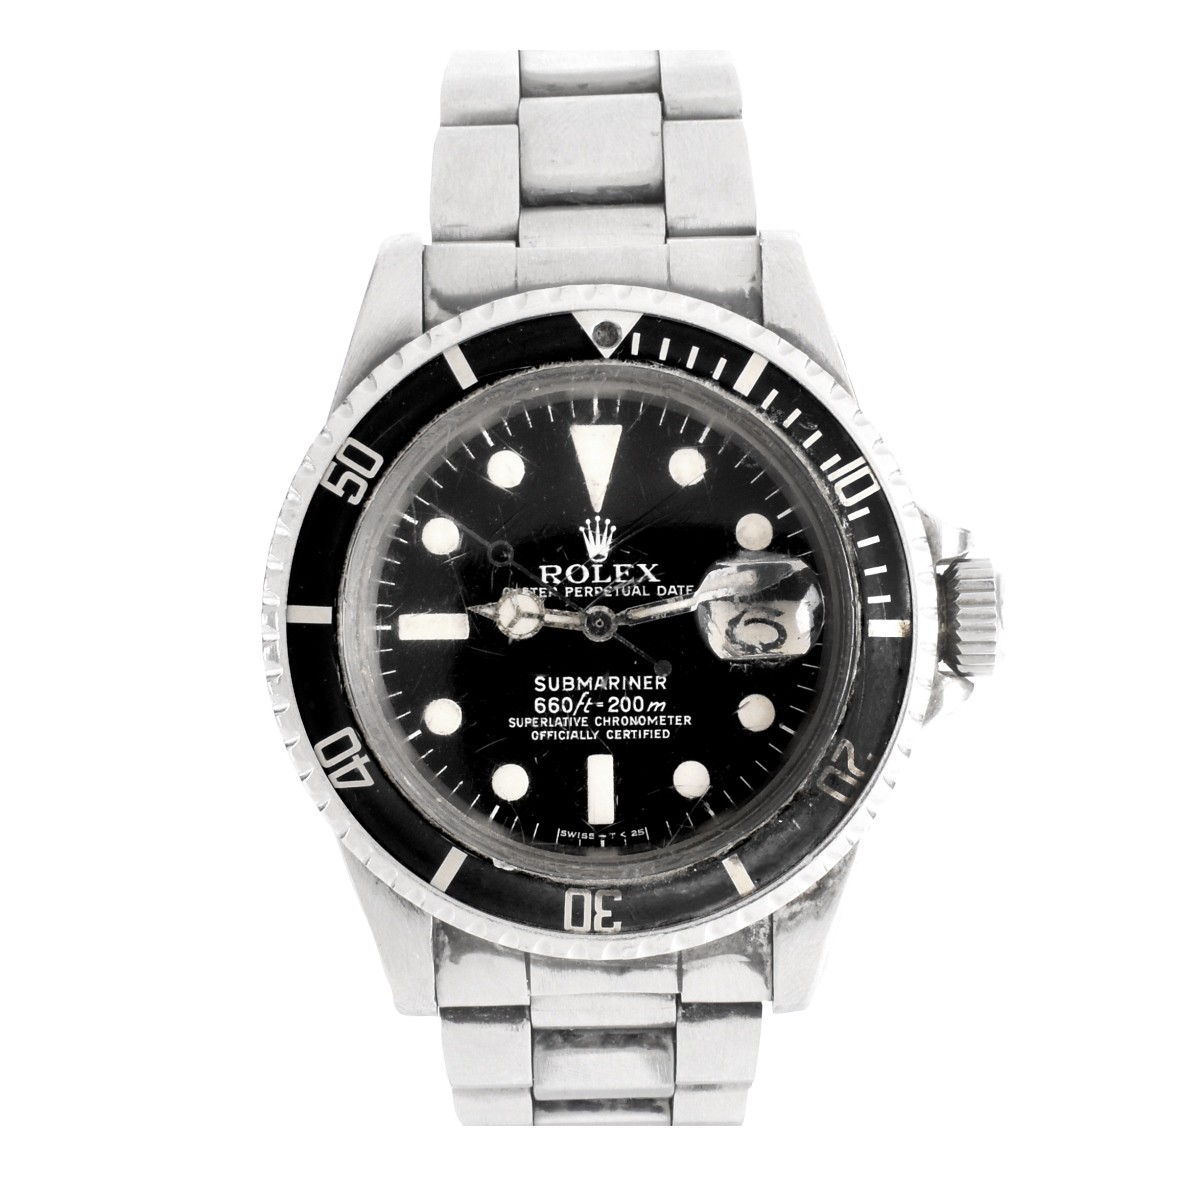 Vintage Rolex Submariner Date Watch